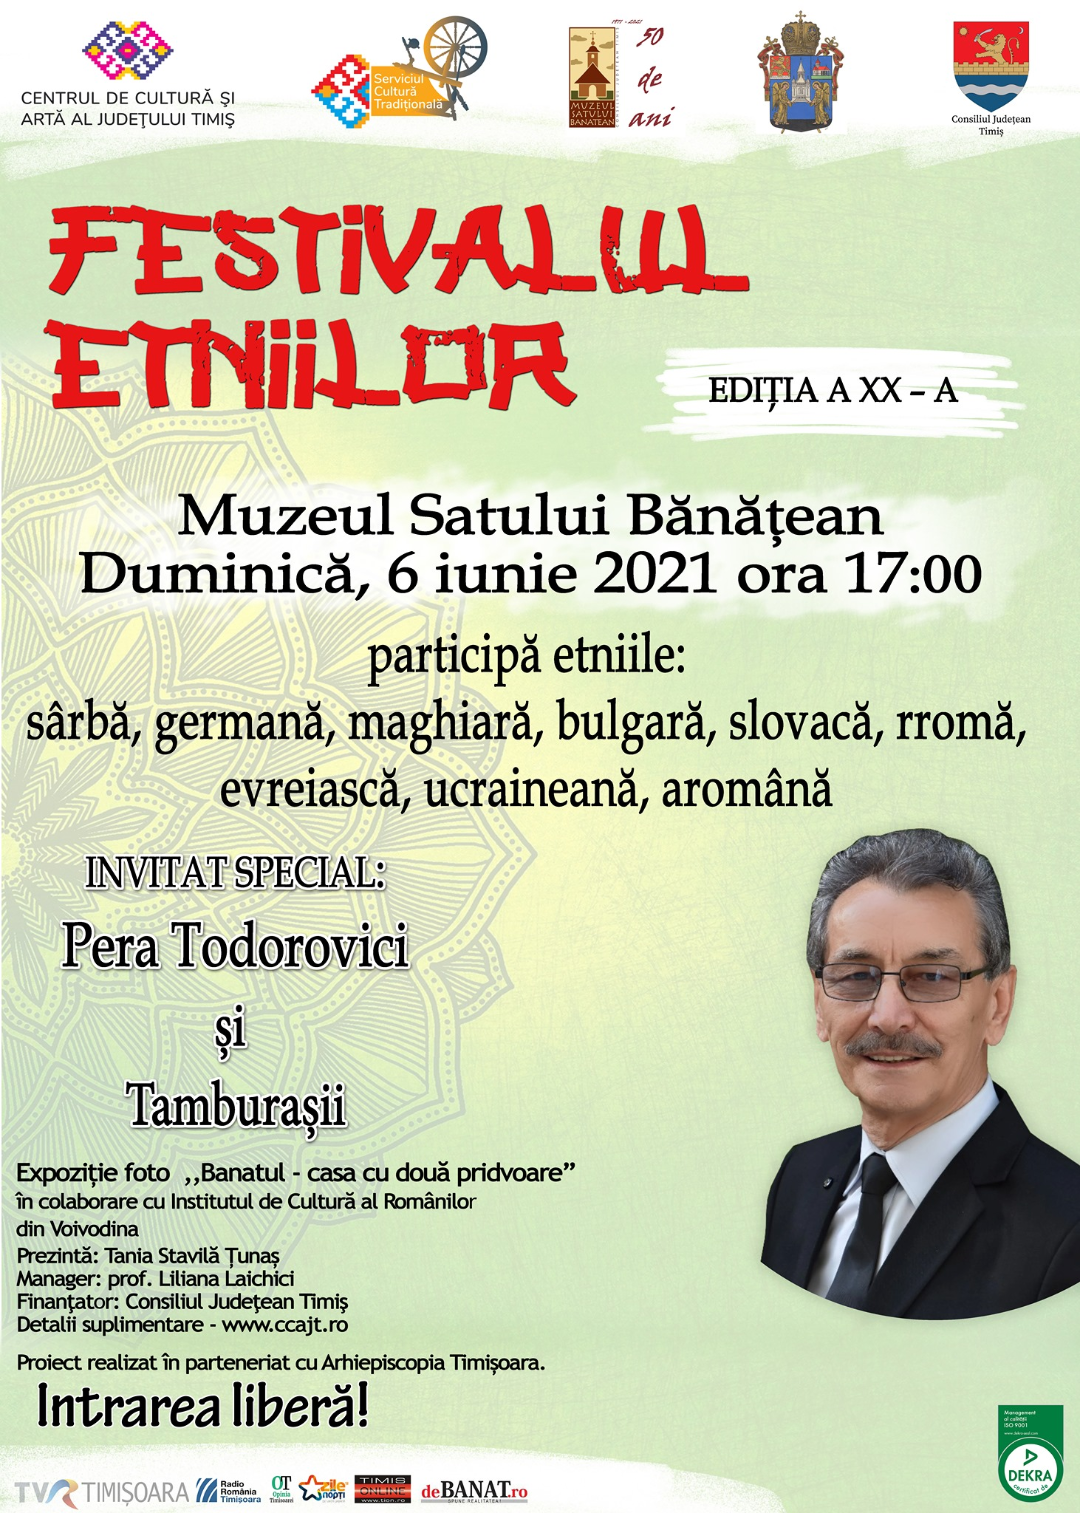 Festivalul Etniilor, cu dansuri și expoziție foto. La Muzeul Satului Bănățean